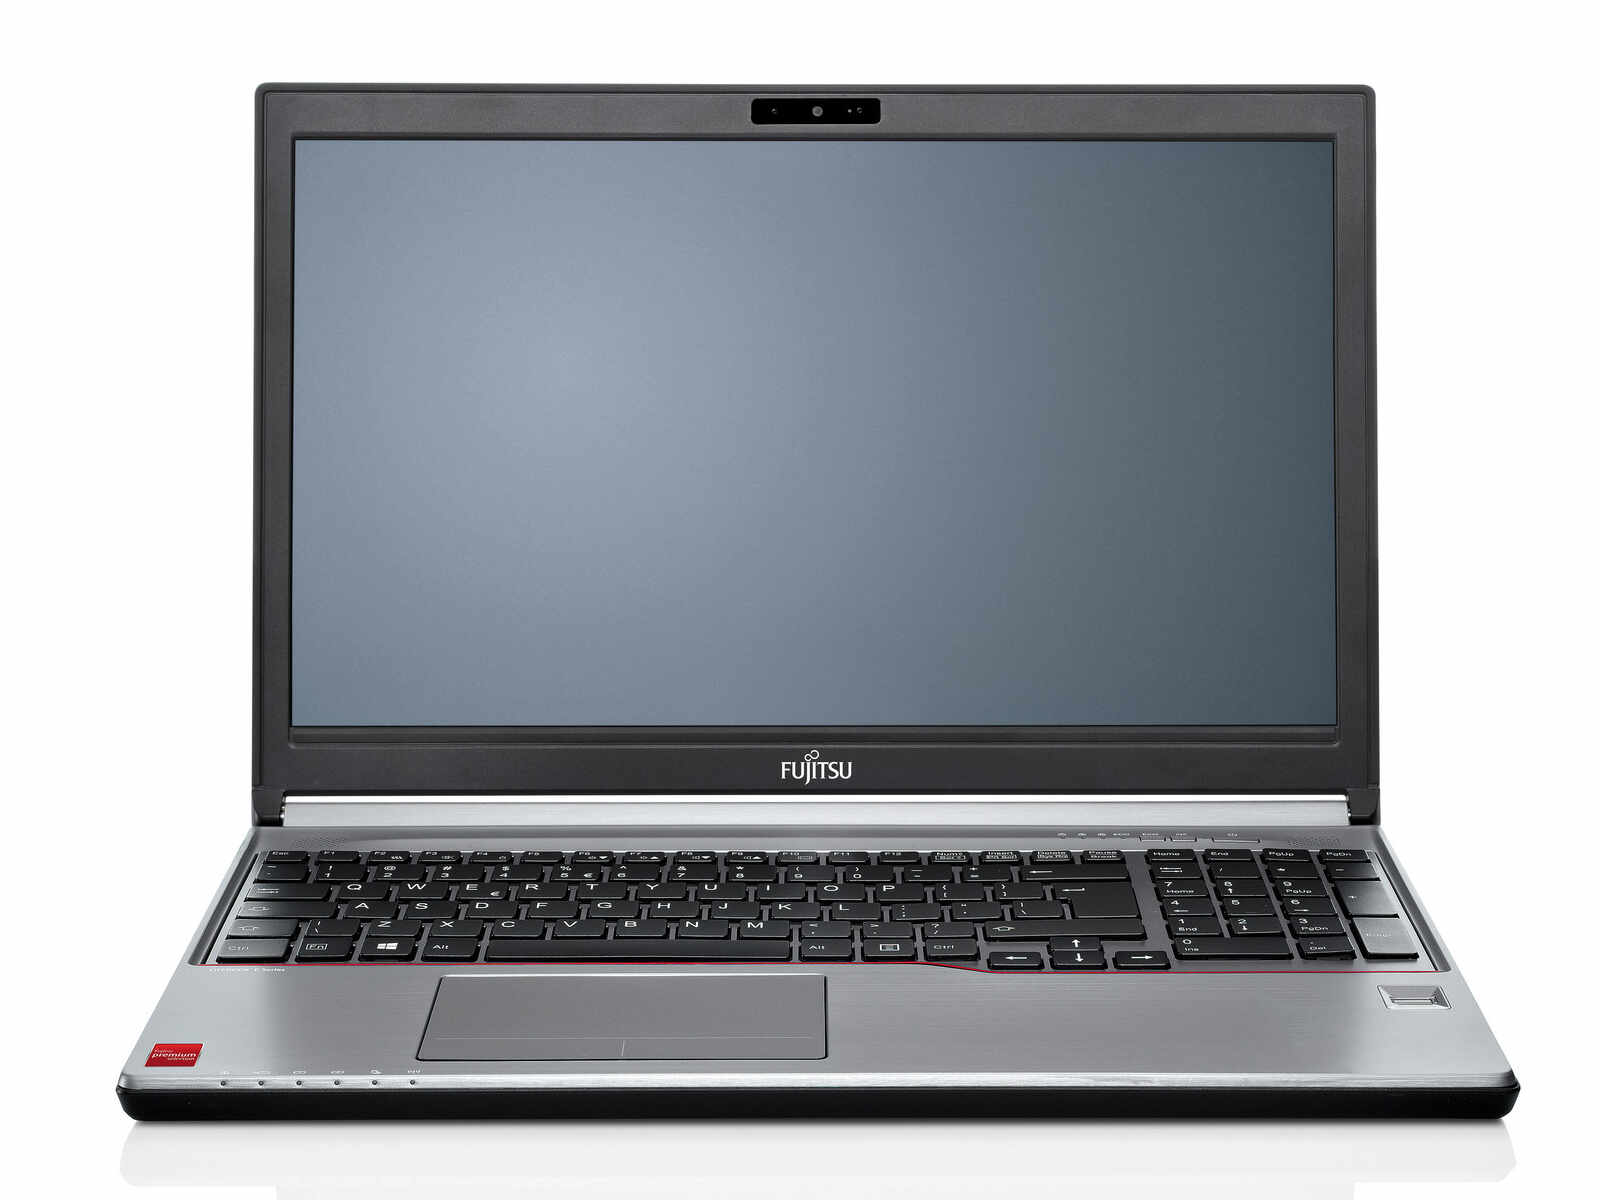 Laptop FUJITSU SIEMENS Lifebook E754, Intel Core i5-4200M 2.50GHz, 4GB DDR3, 120GB SSD, DVD-RW, 15.6 Inch, Tastatura Numerica, Fara Webcam